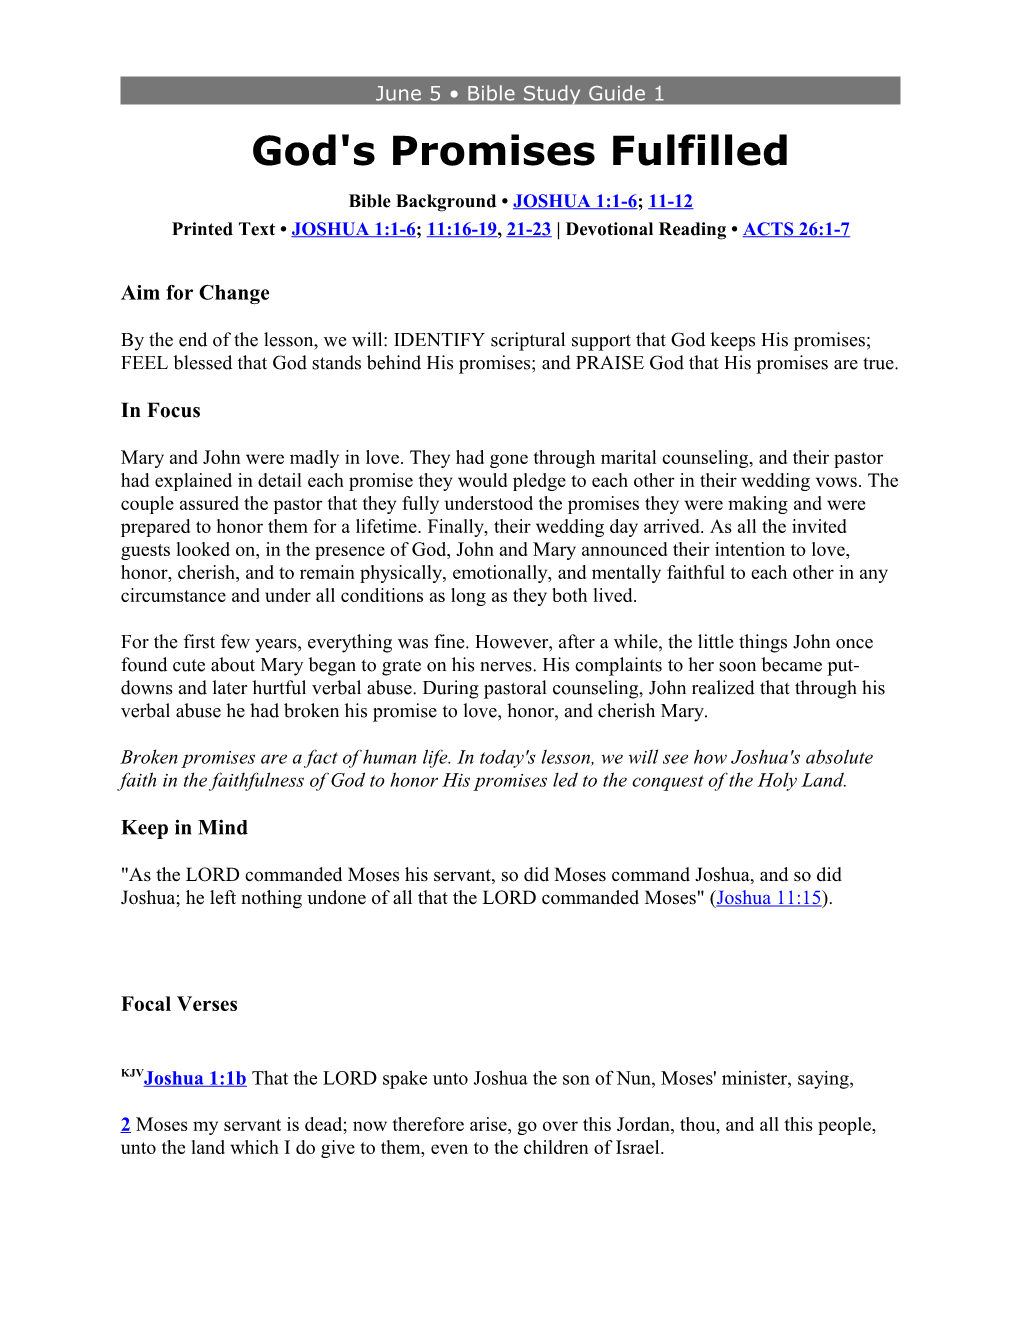 God's Promises Fulfilled